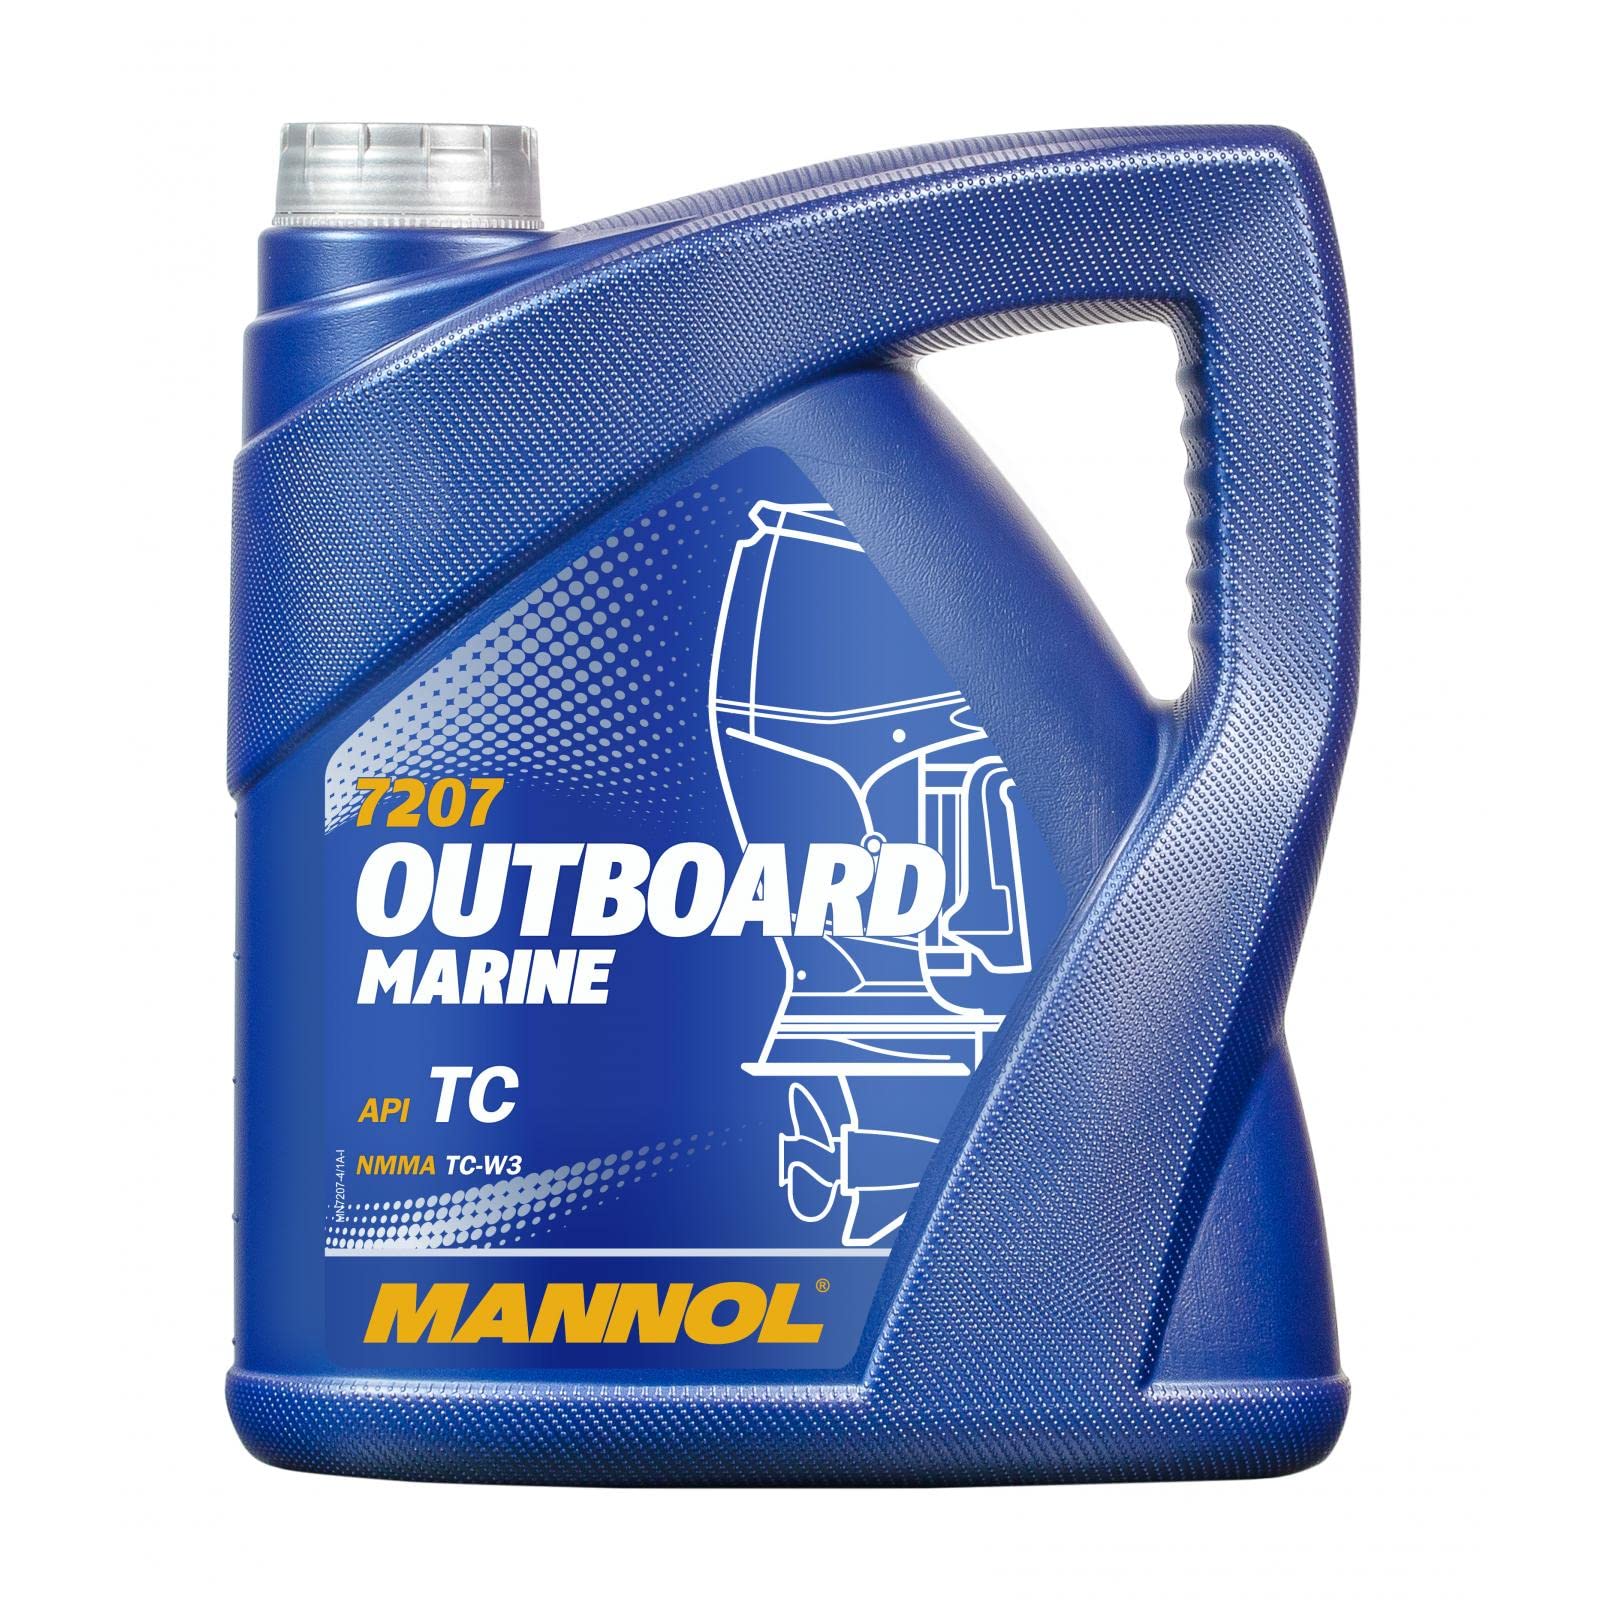 Motorenöl Outboard Marine MANNOL API TD 4 Liter von MANNOL